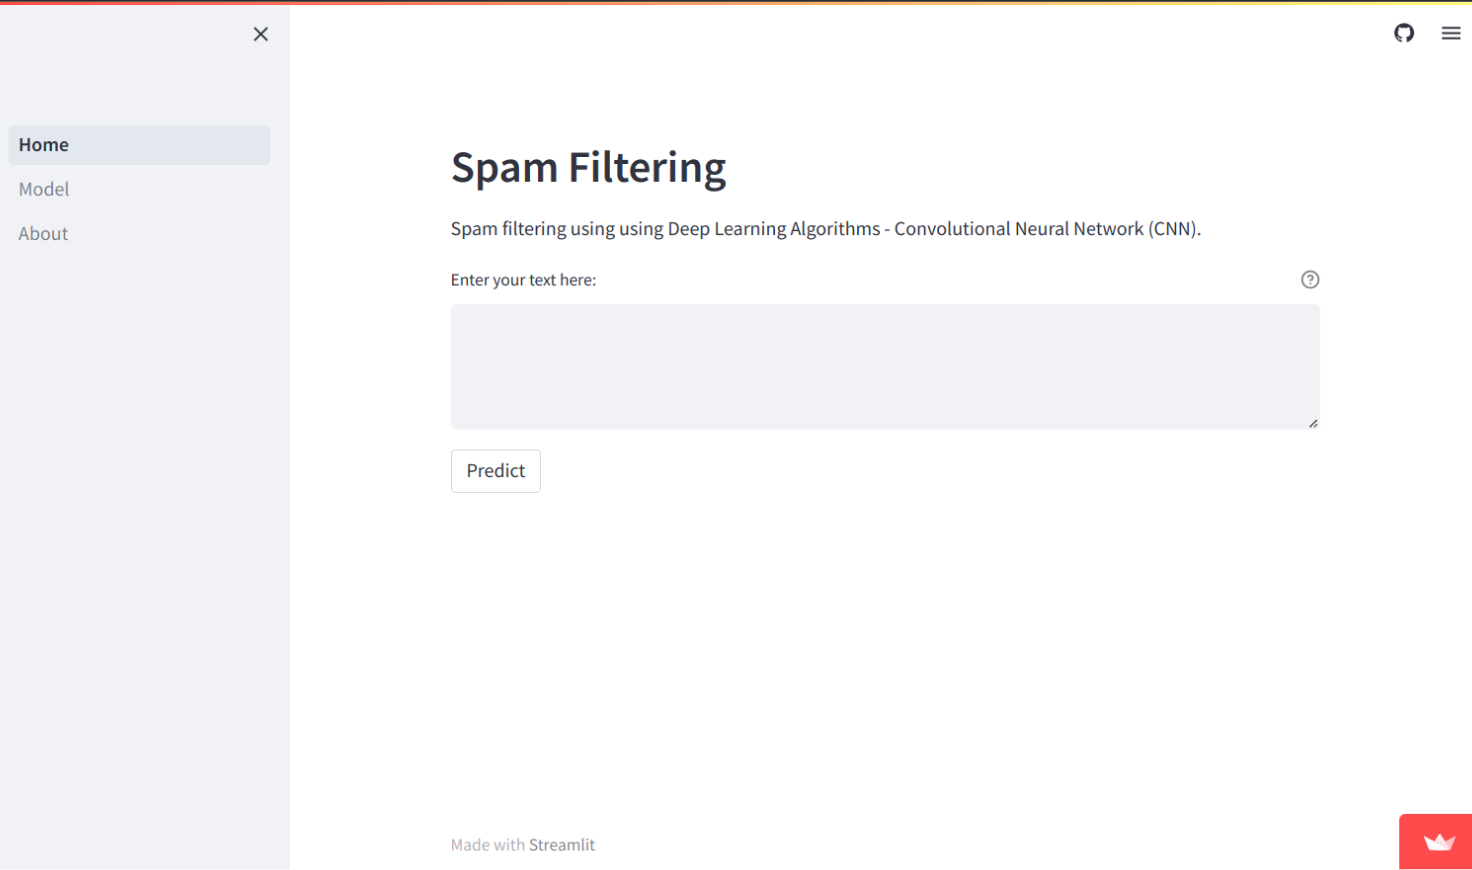 Spam Filtering